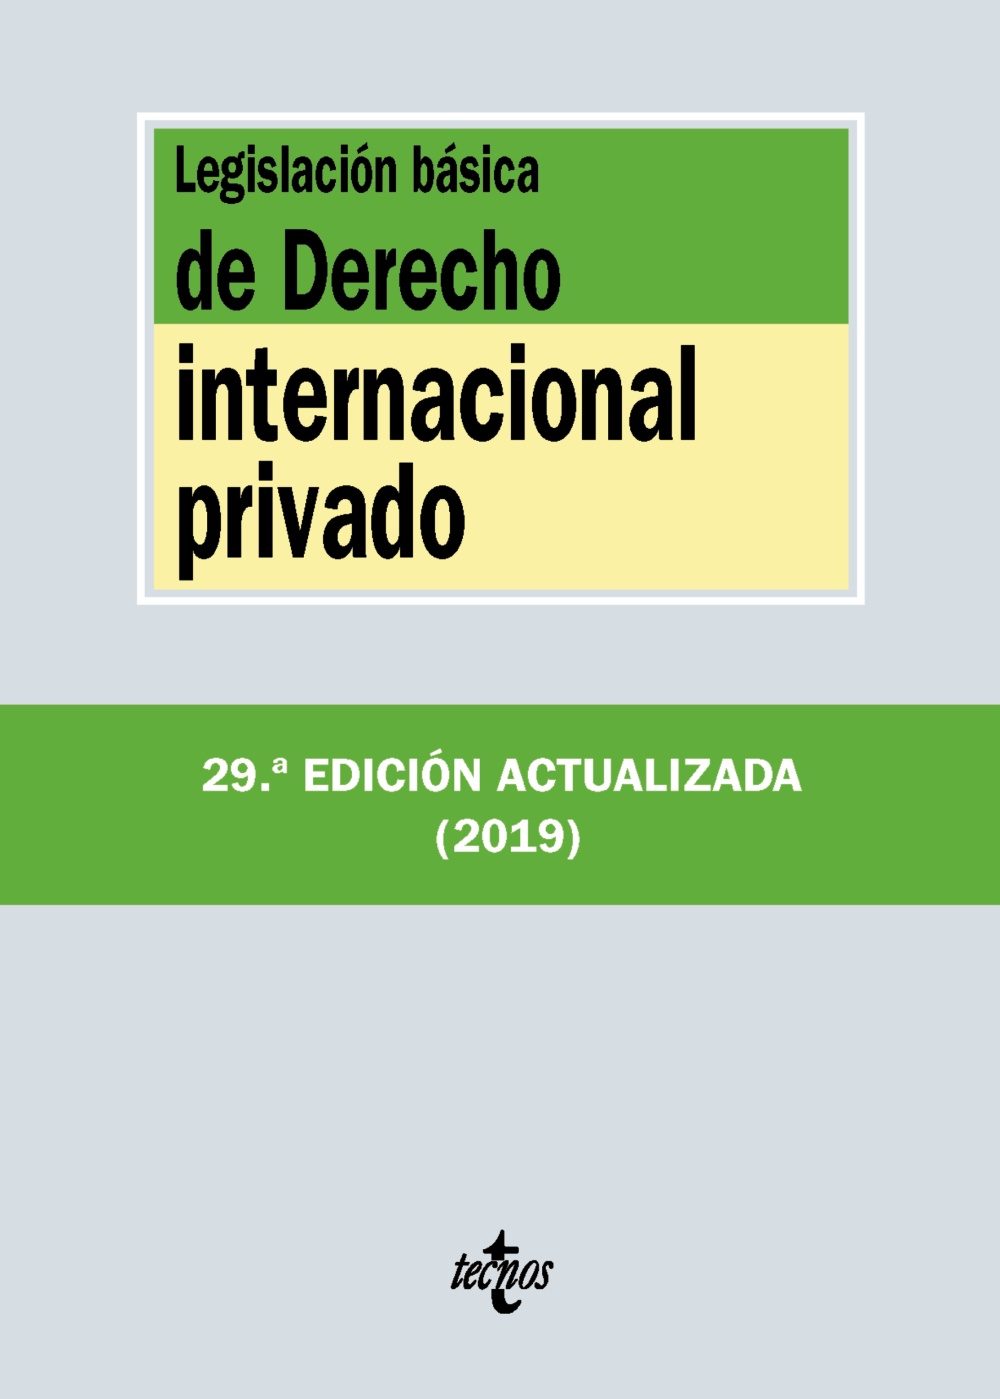 Imagen de portada del libro Legislación básica de Derecho internacional privado